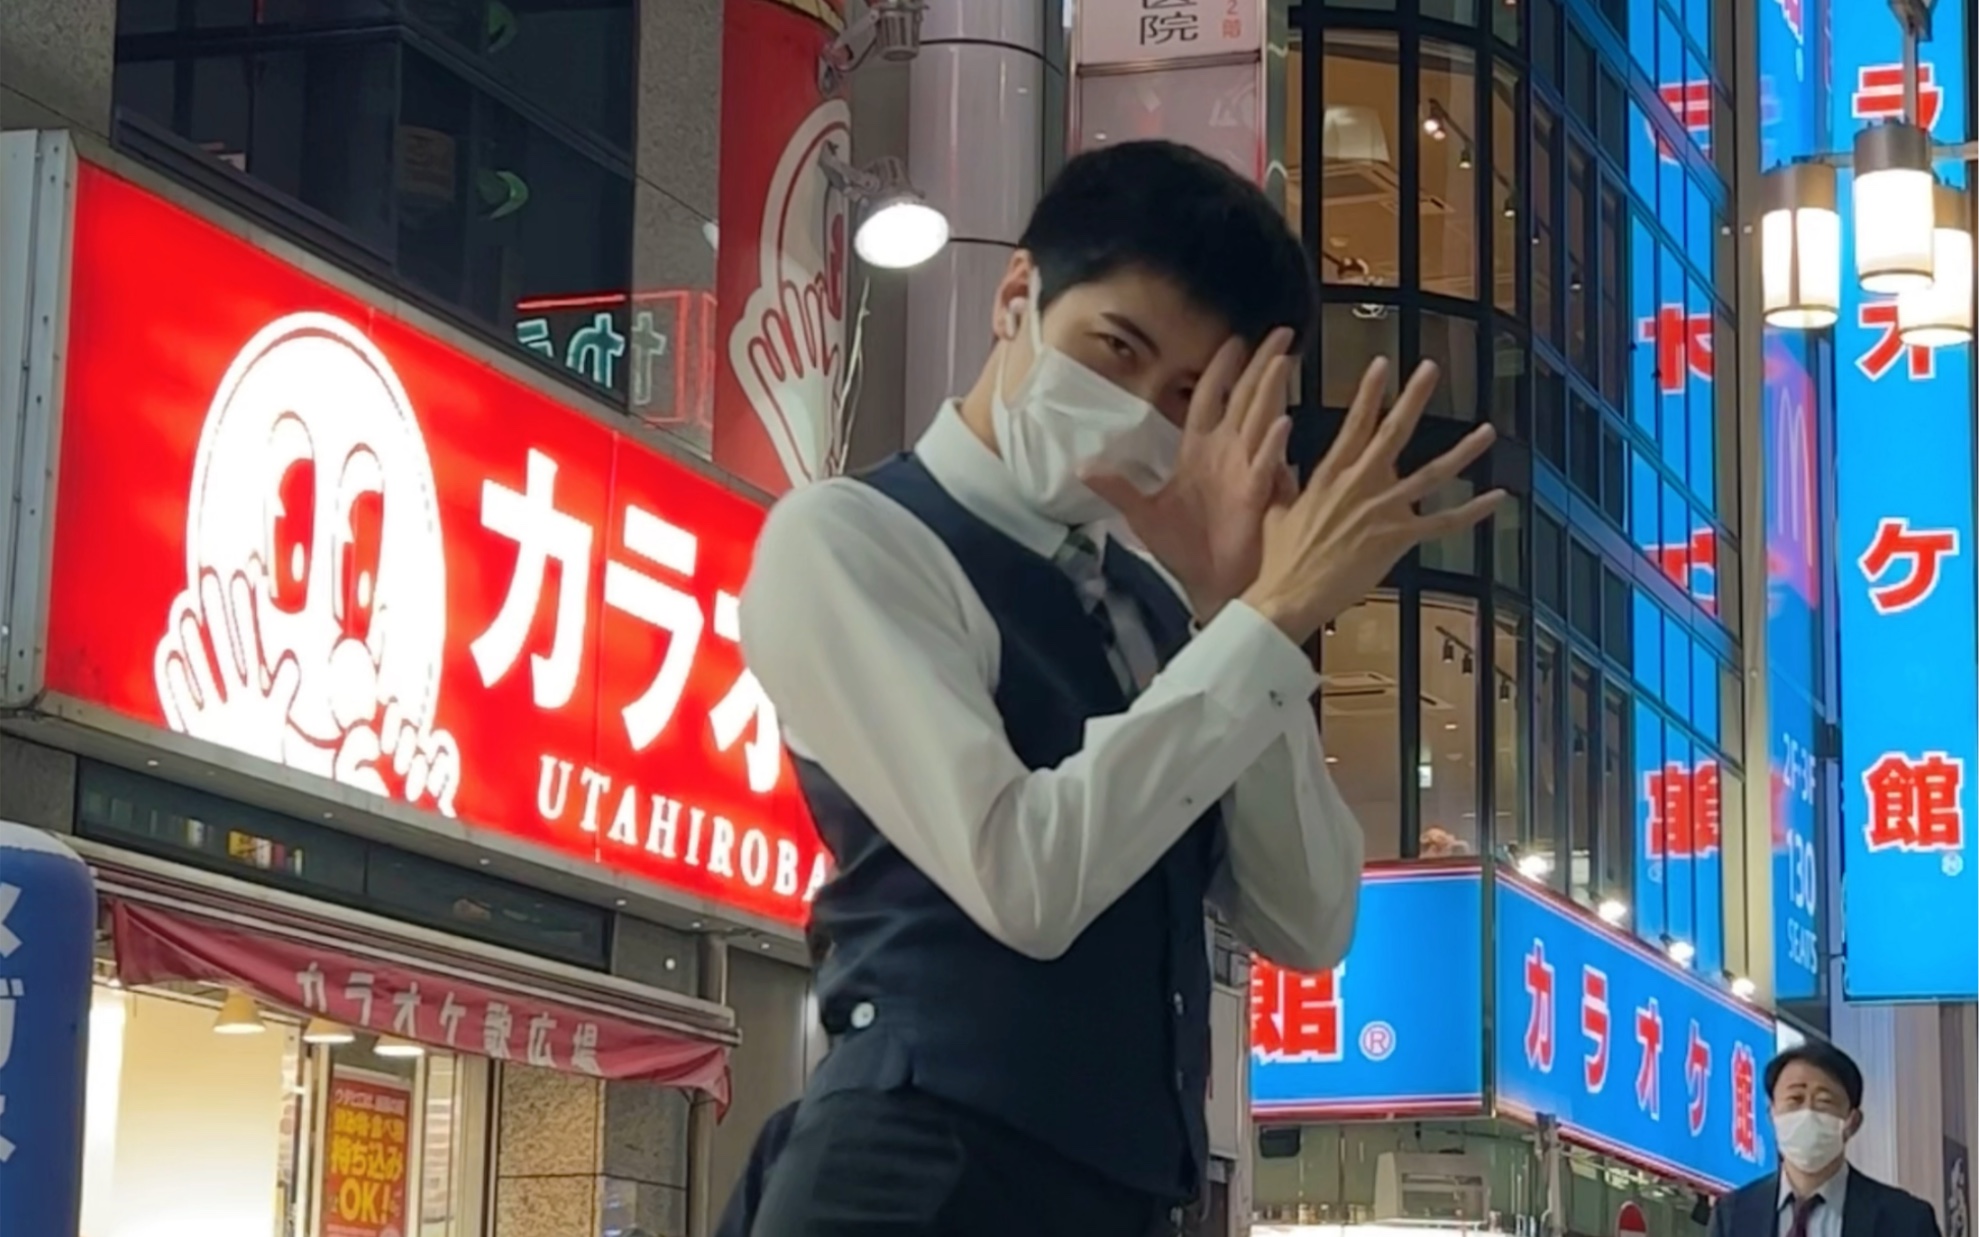 请问在日本街头这样跳舞安全吗